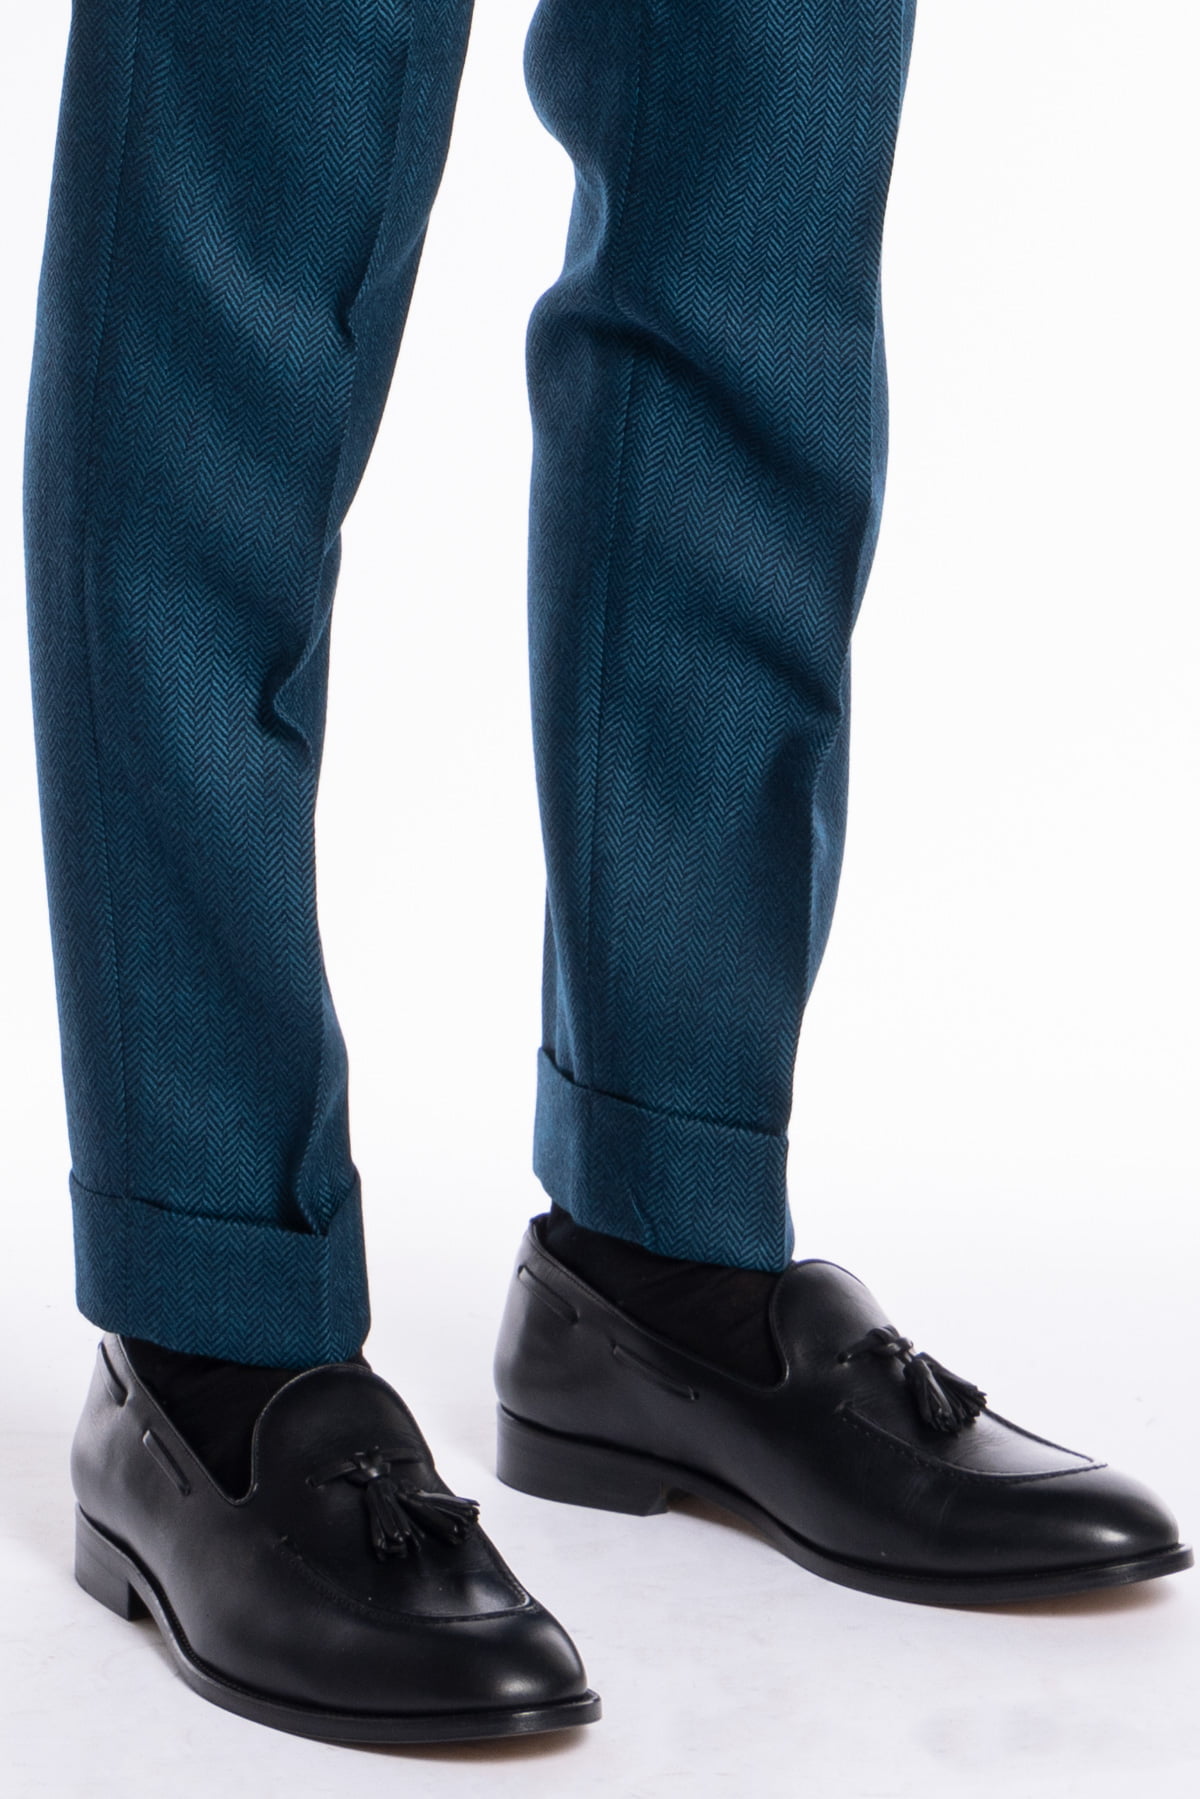 Pantalone uomo verde ottanio spigato chiusura prolungata doppia pinces in lana flanella al 100% Bristol Tessuti Napoli